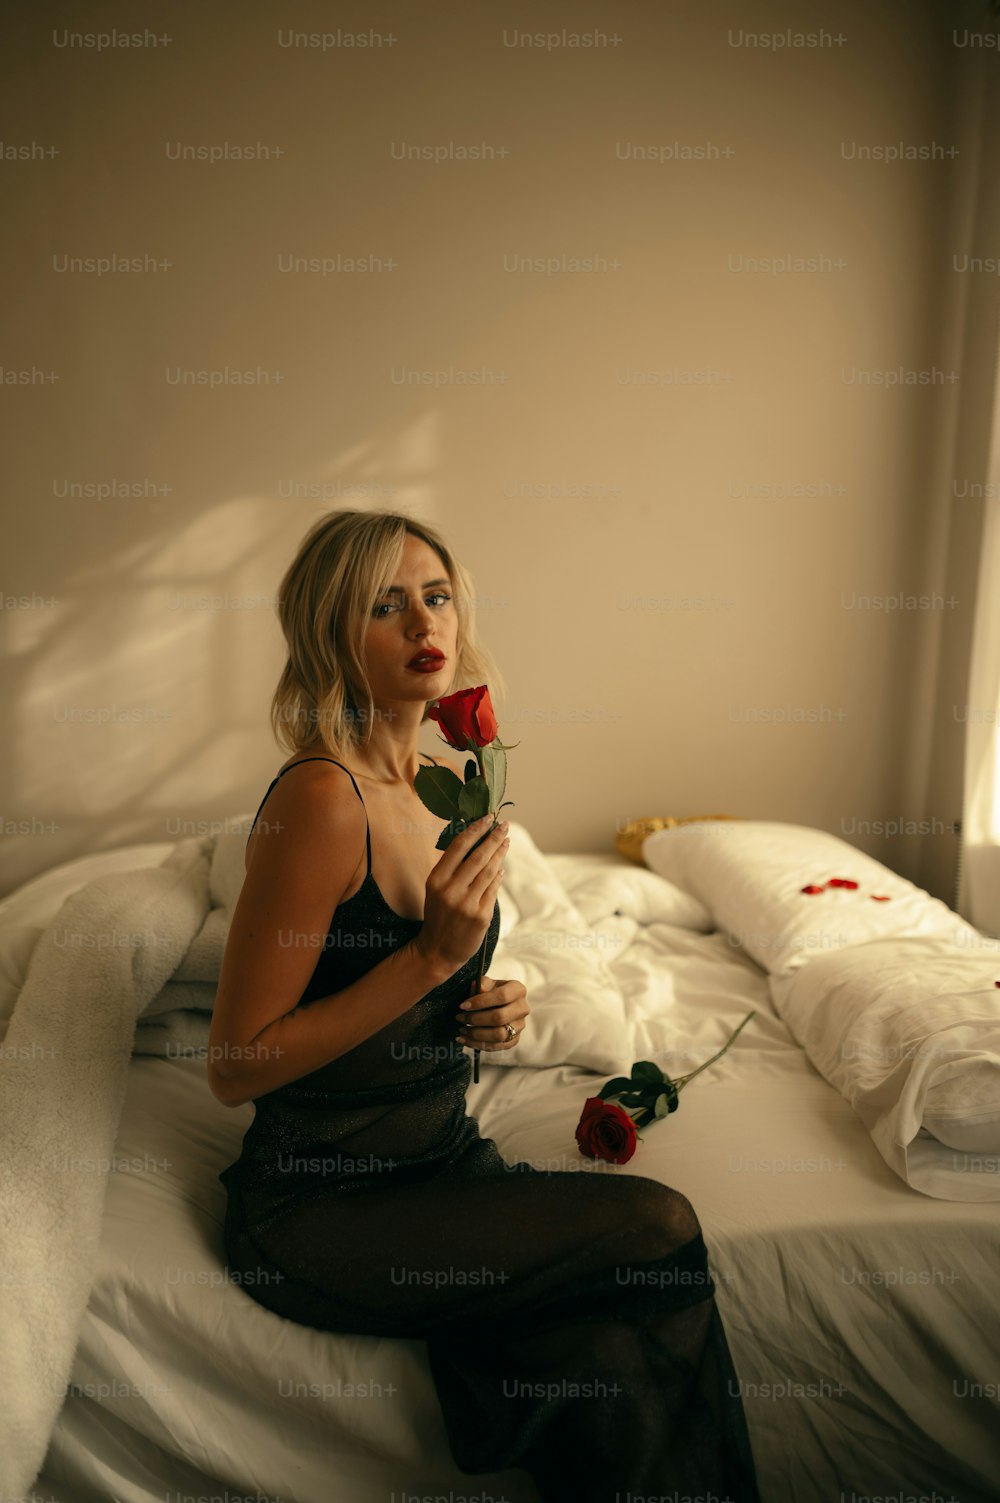 Une femme assise sur un lit tenant une rose